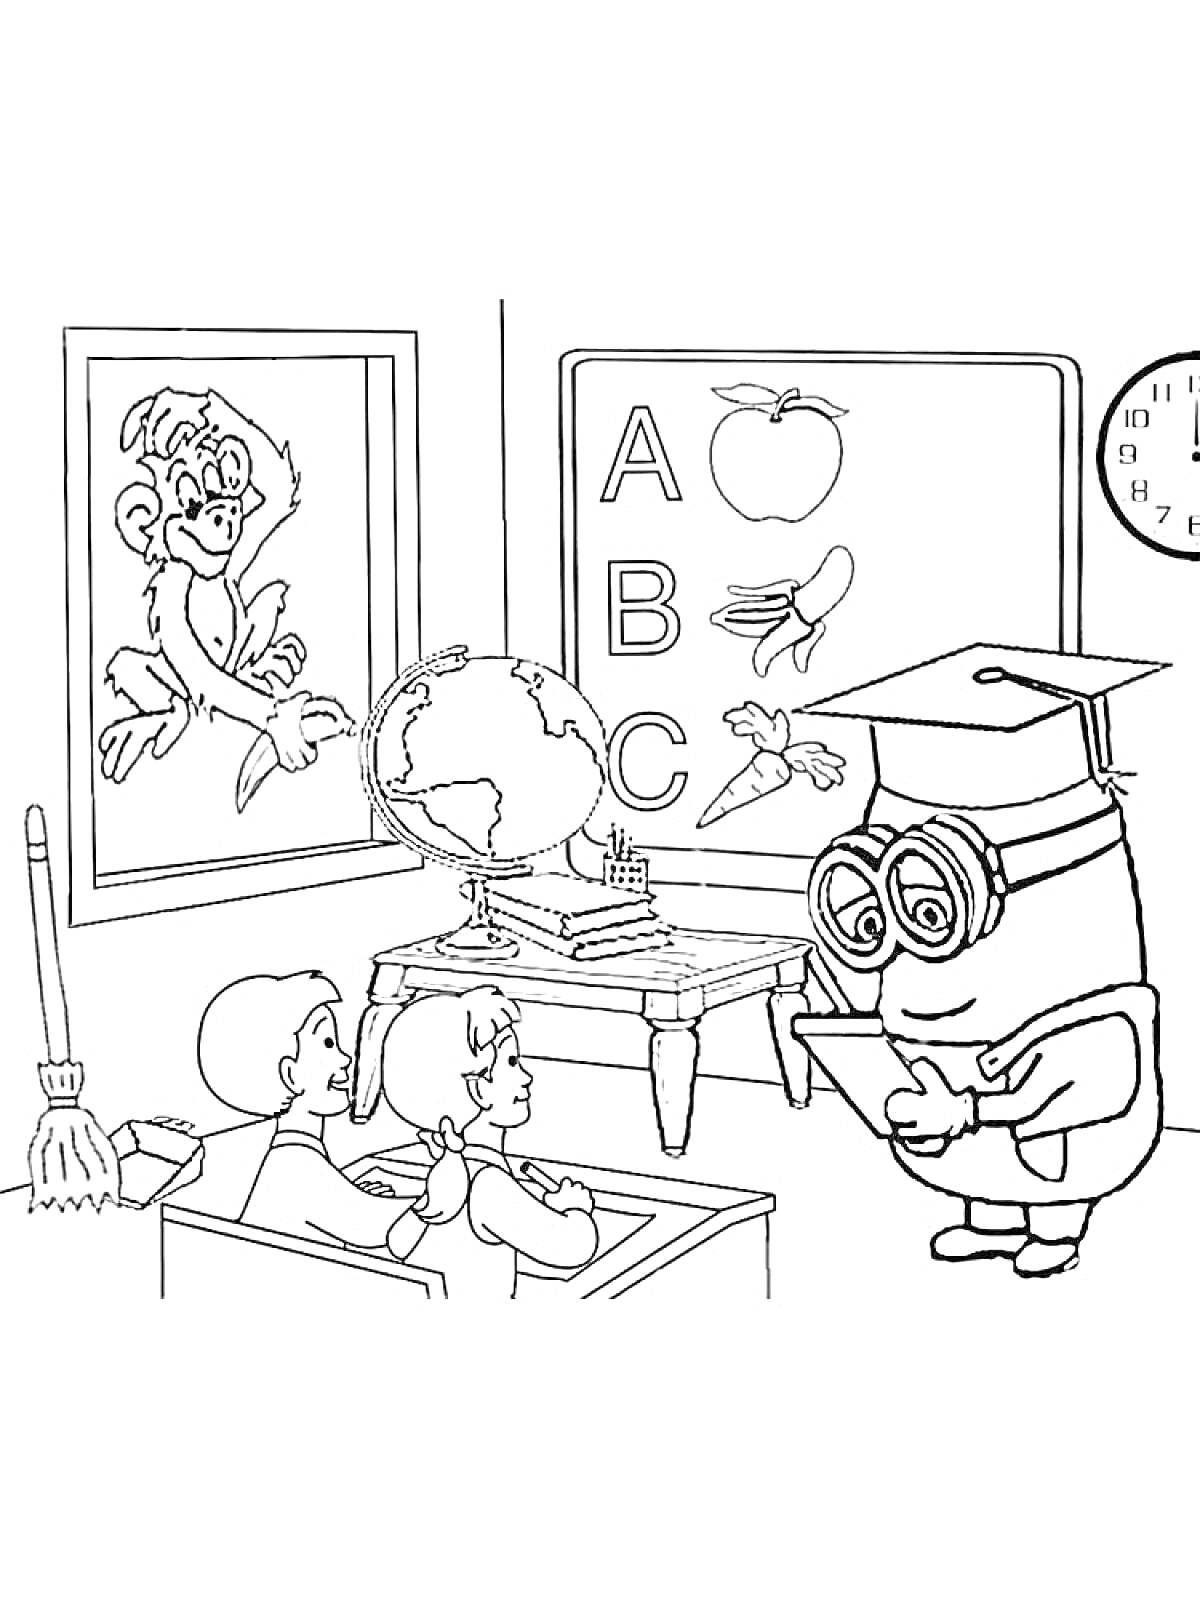 Раскраска Урок в классе с учениками, учителем-миньоном, доской с алфавитом и картинками, глобусом, книгами и плакатом с обезьяной